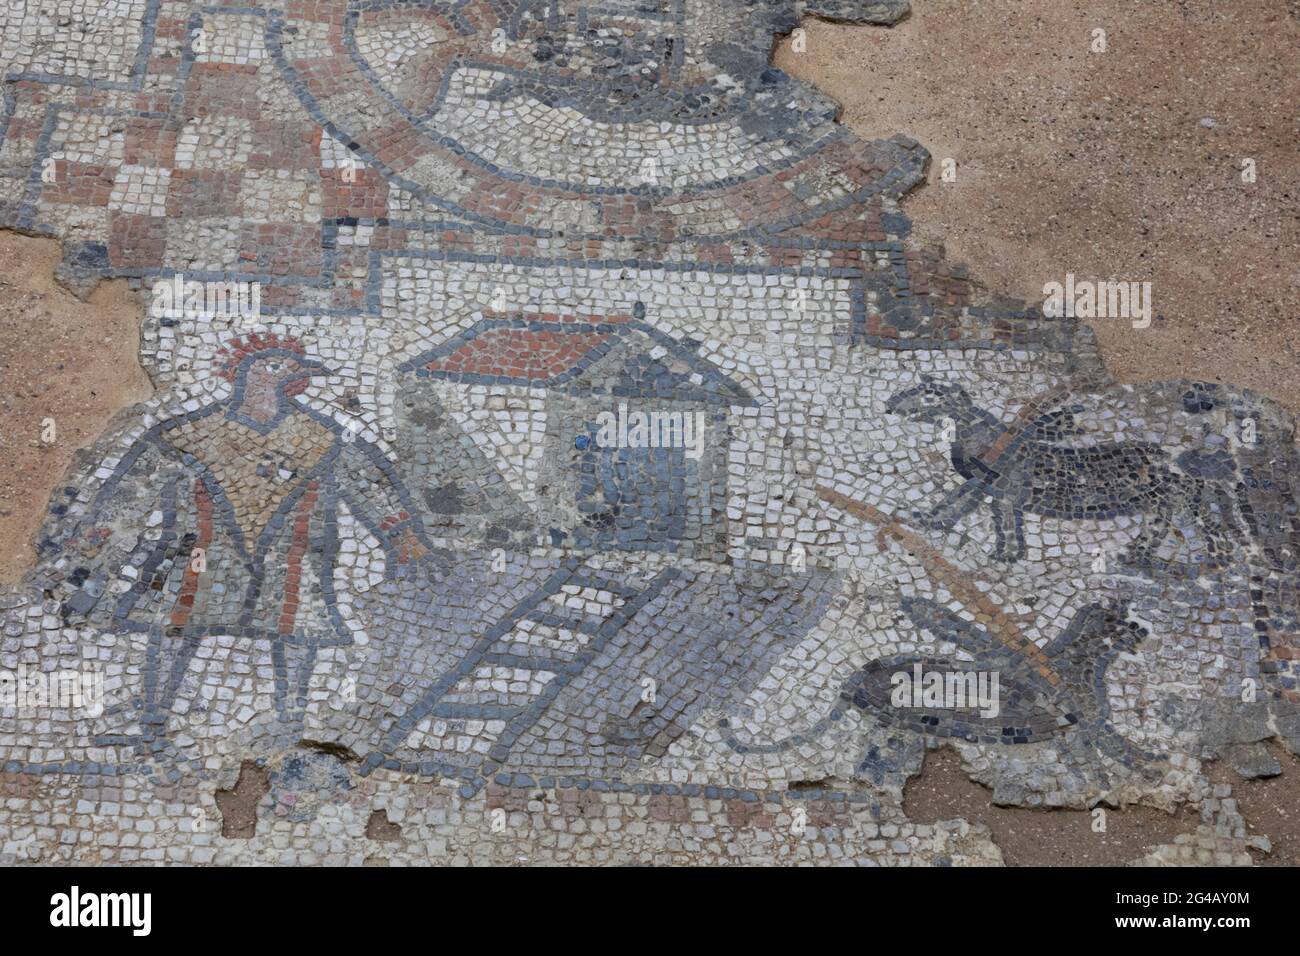 Inghilterra, Isola di Wight, Brading Villa Romana, il Mosaico Gallo raffigurante un uomo testa di pollo Foto Stock